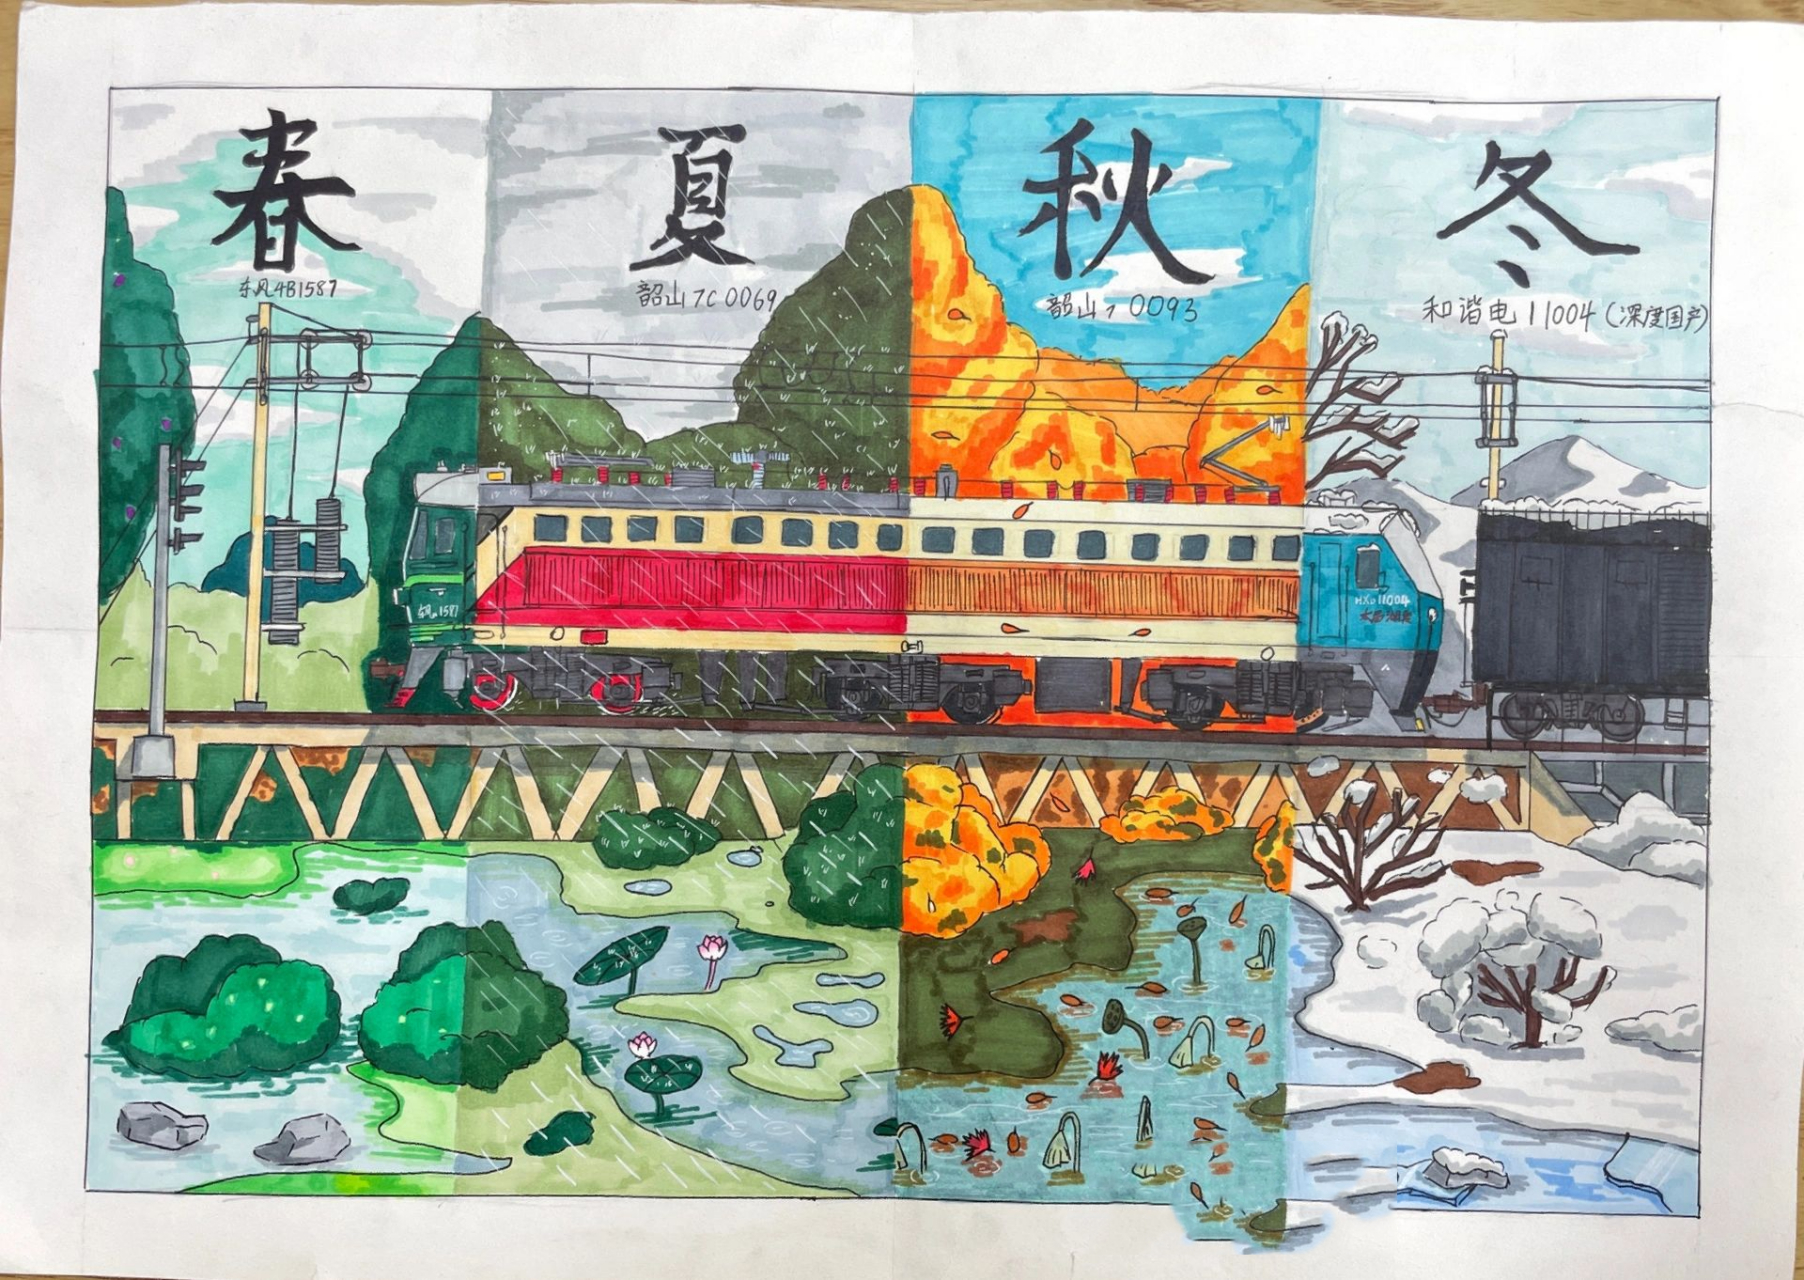 六年级学生手绘作品 主题:四季/节气 绘画特长培养,美术校队的孩子用